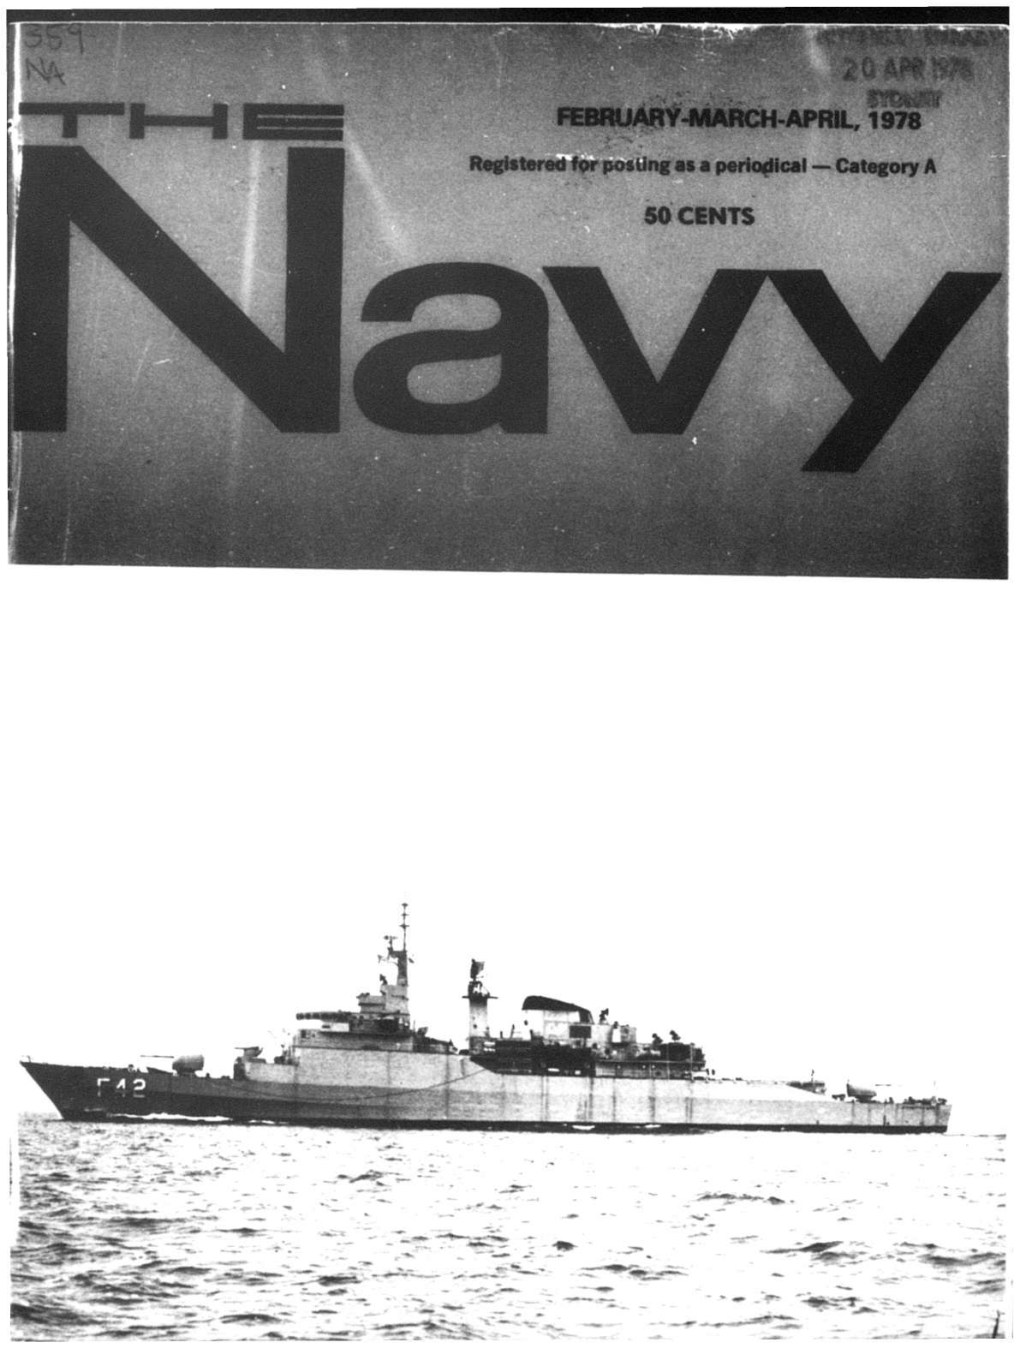 The Navy Vol 40 Part 1 1978 (Feb-Mar-Apr, May-June-July 1978)